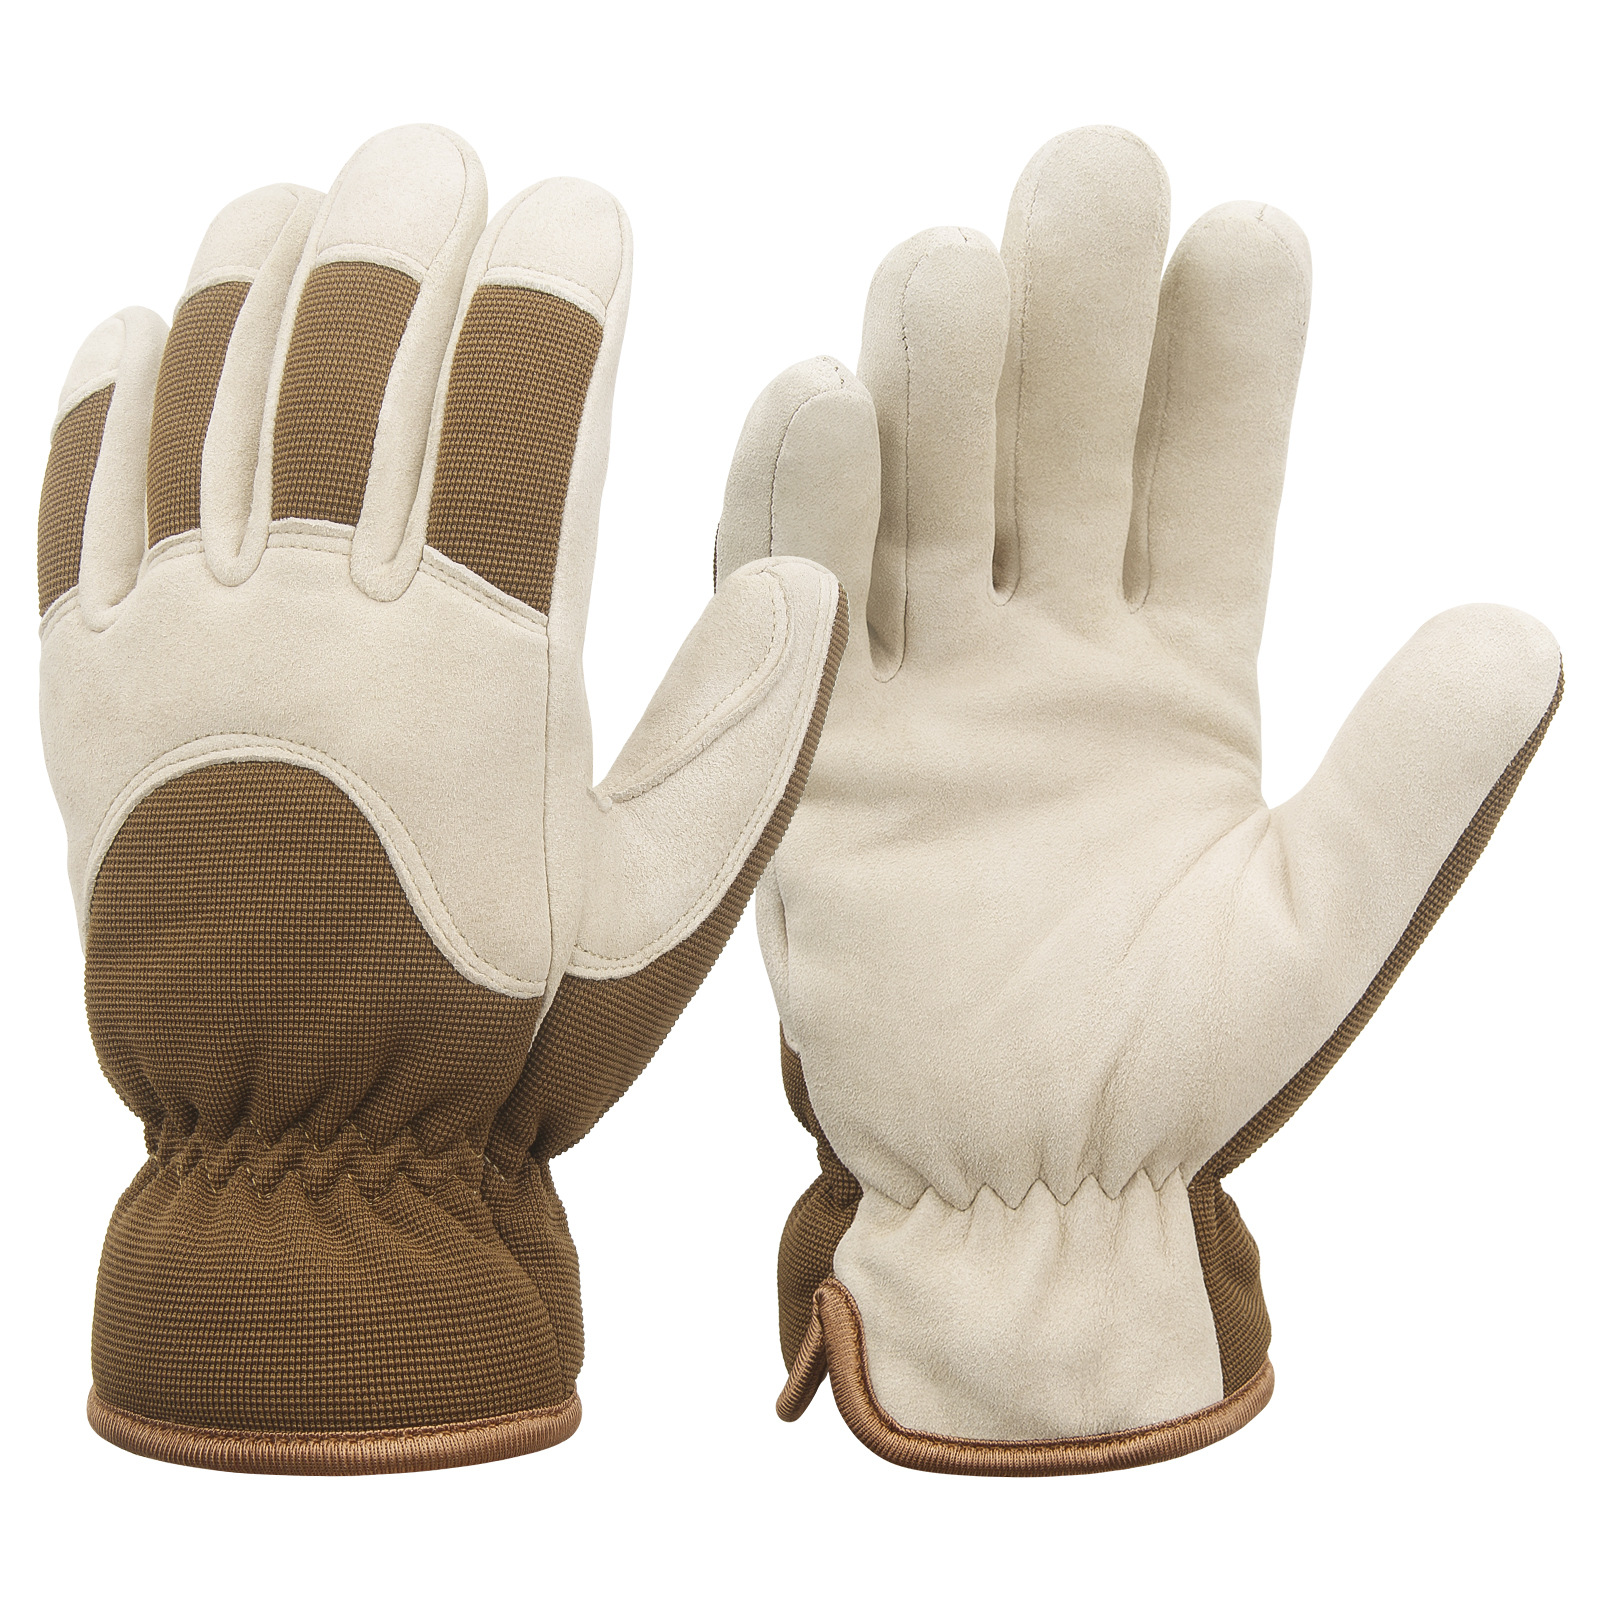 HANDLANDY优质羊皮舒适耐用冬季保暖户外作业机械工作手套